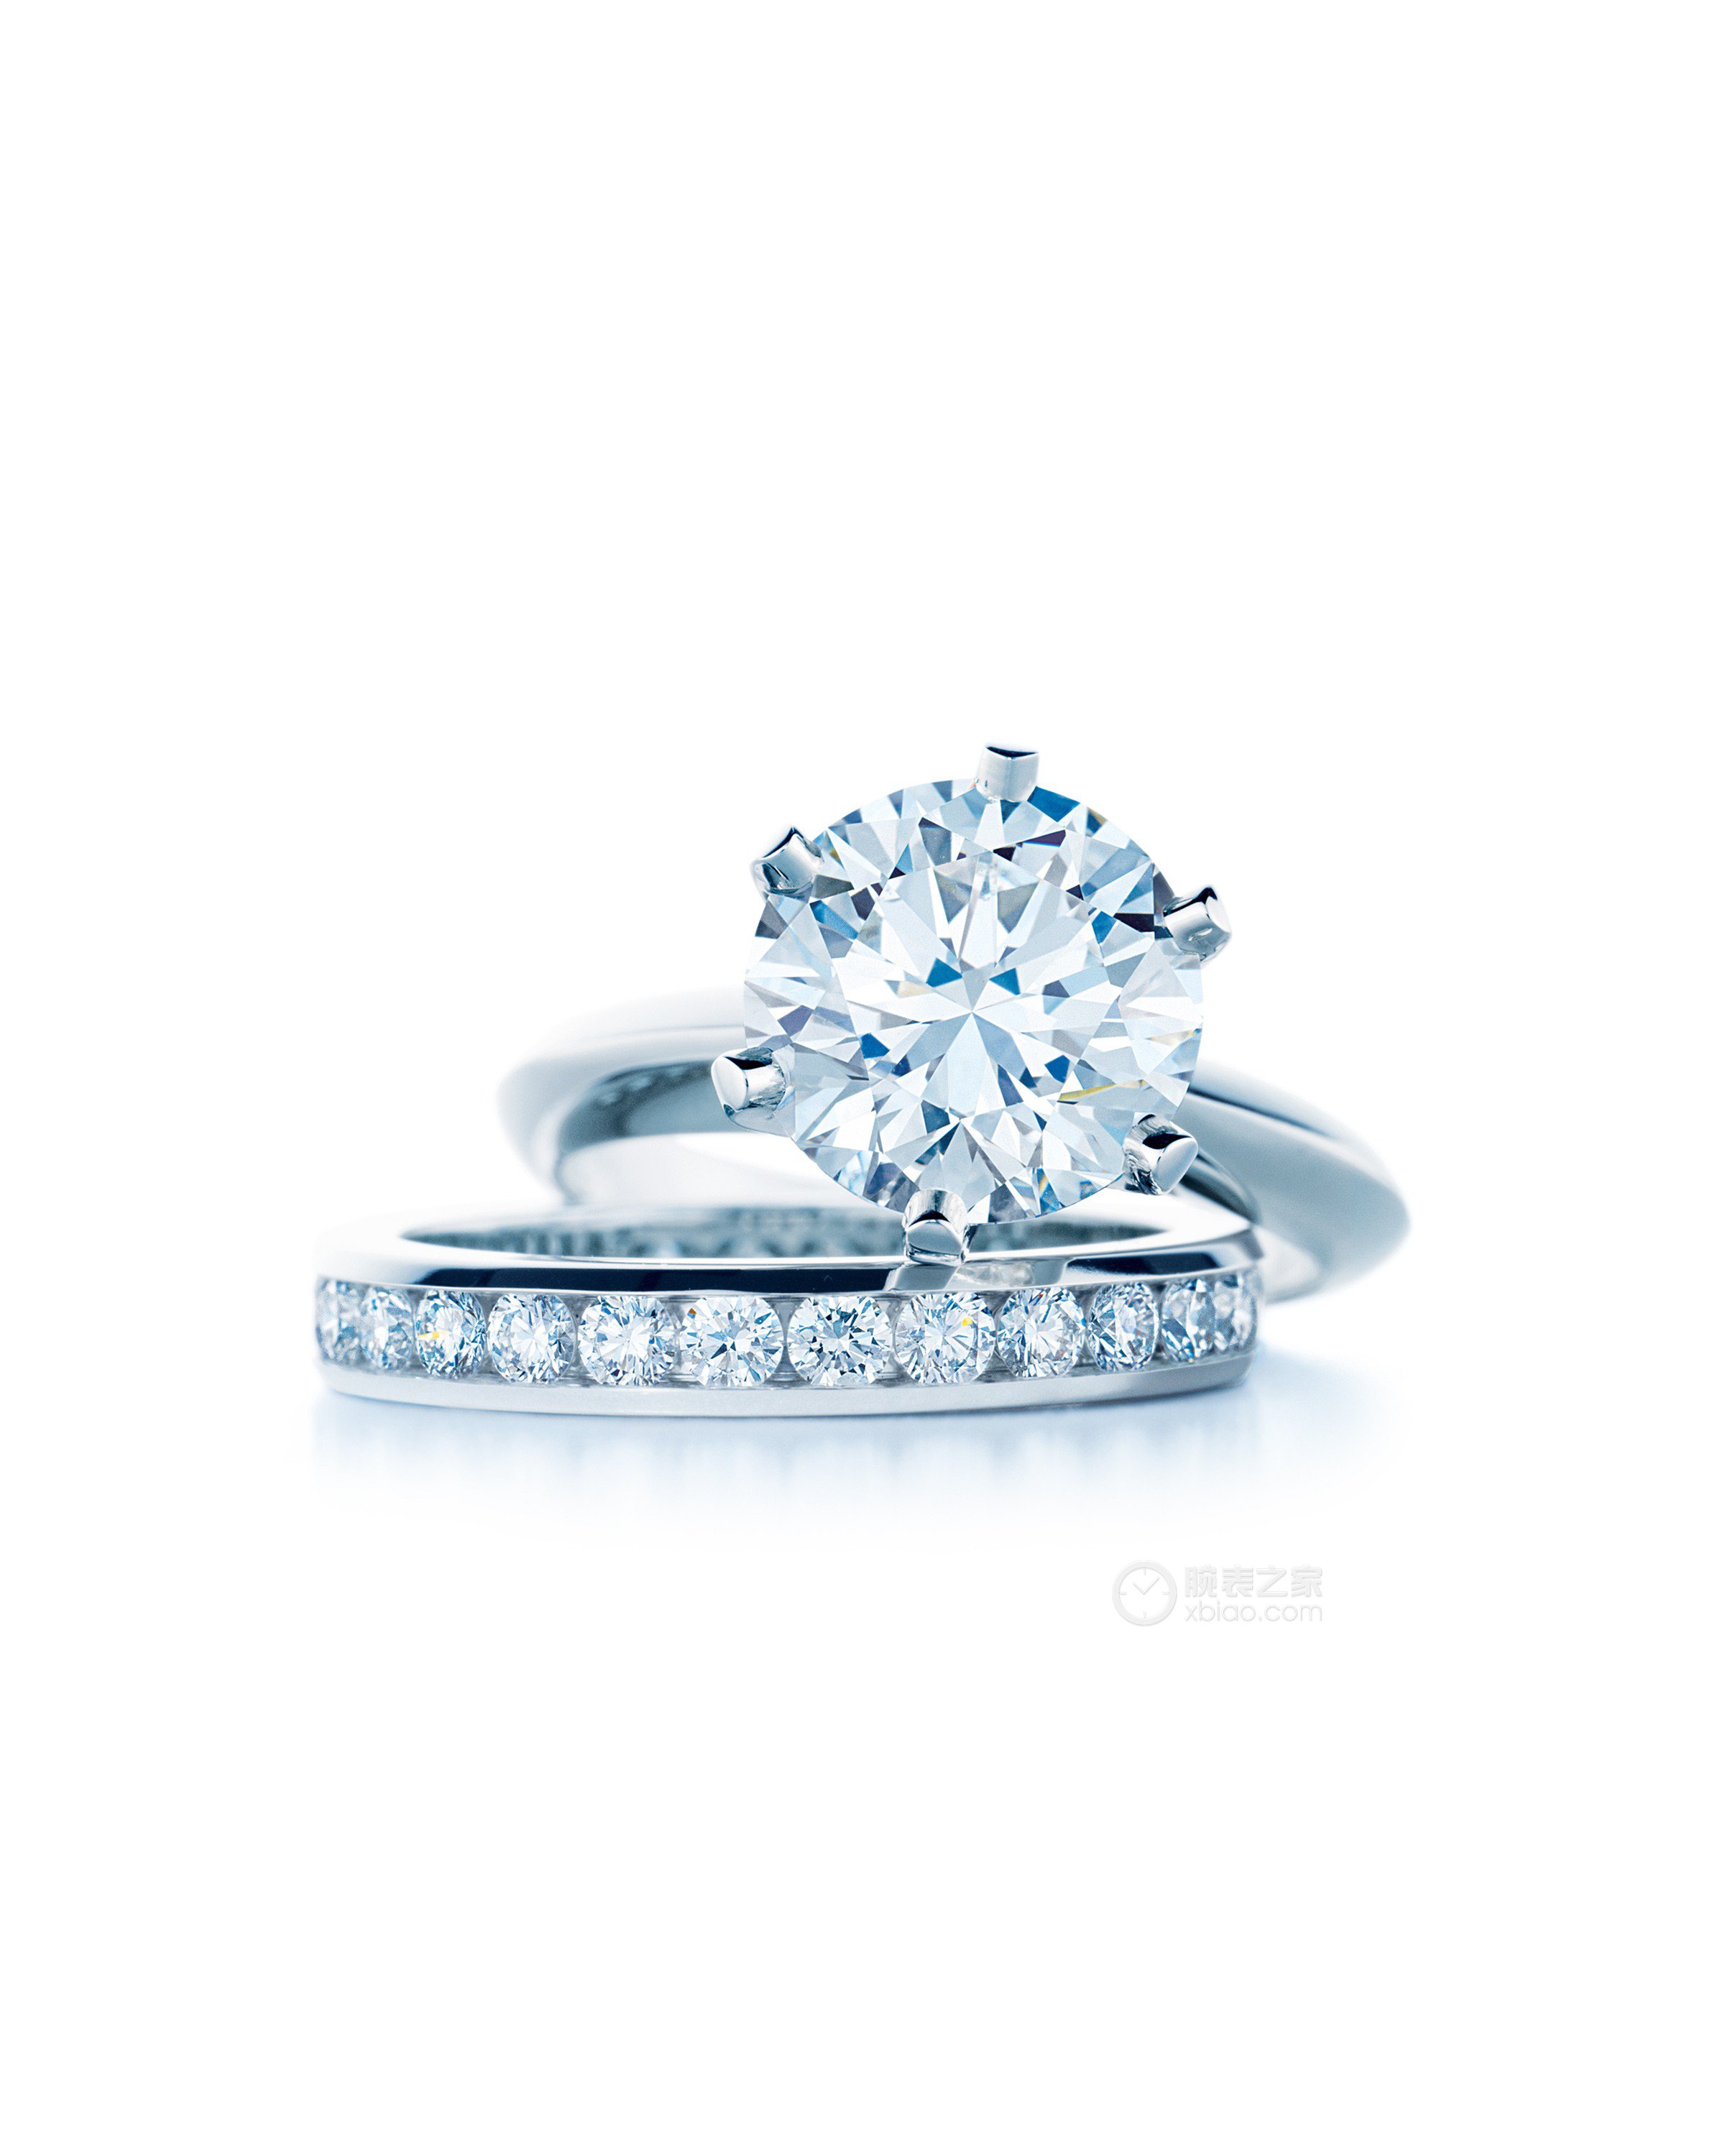 高清图|蒂芙尼订婚戒指Tiffany Soleste钻戒戒指图片1|腕表之家-珠宝